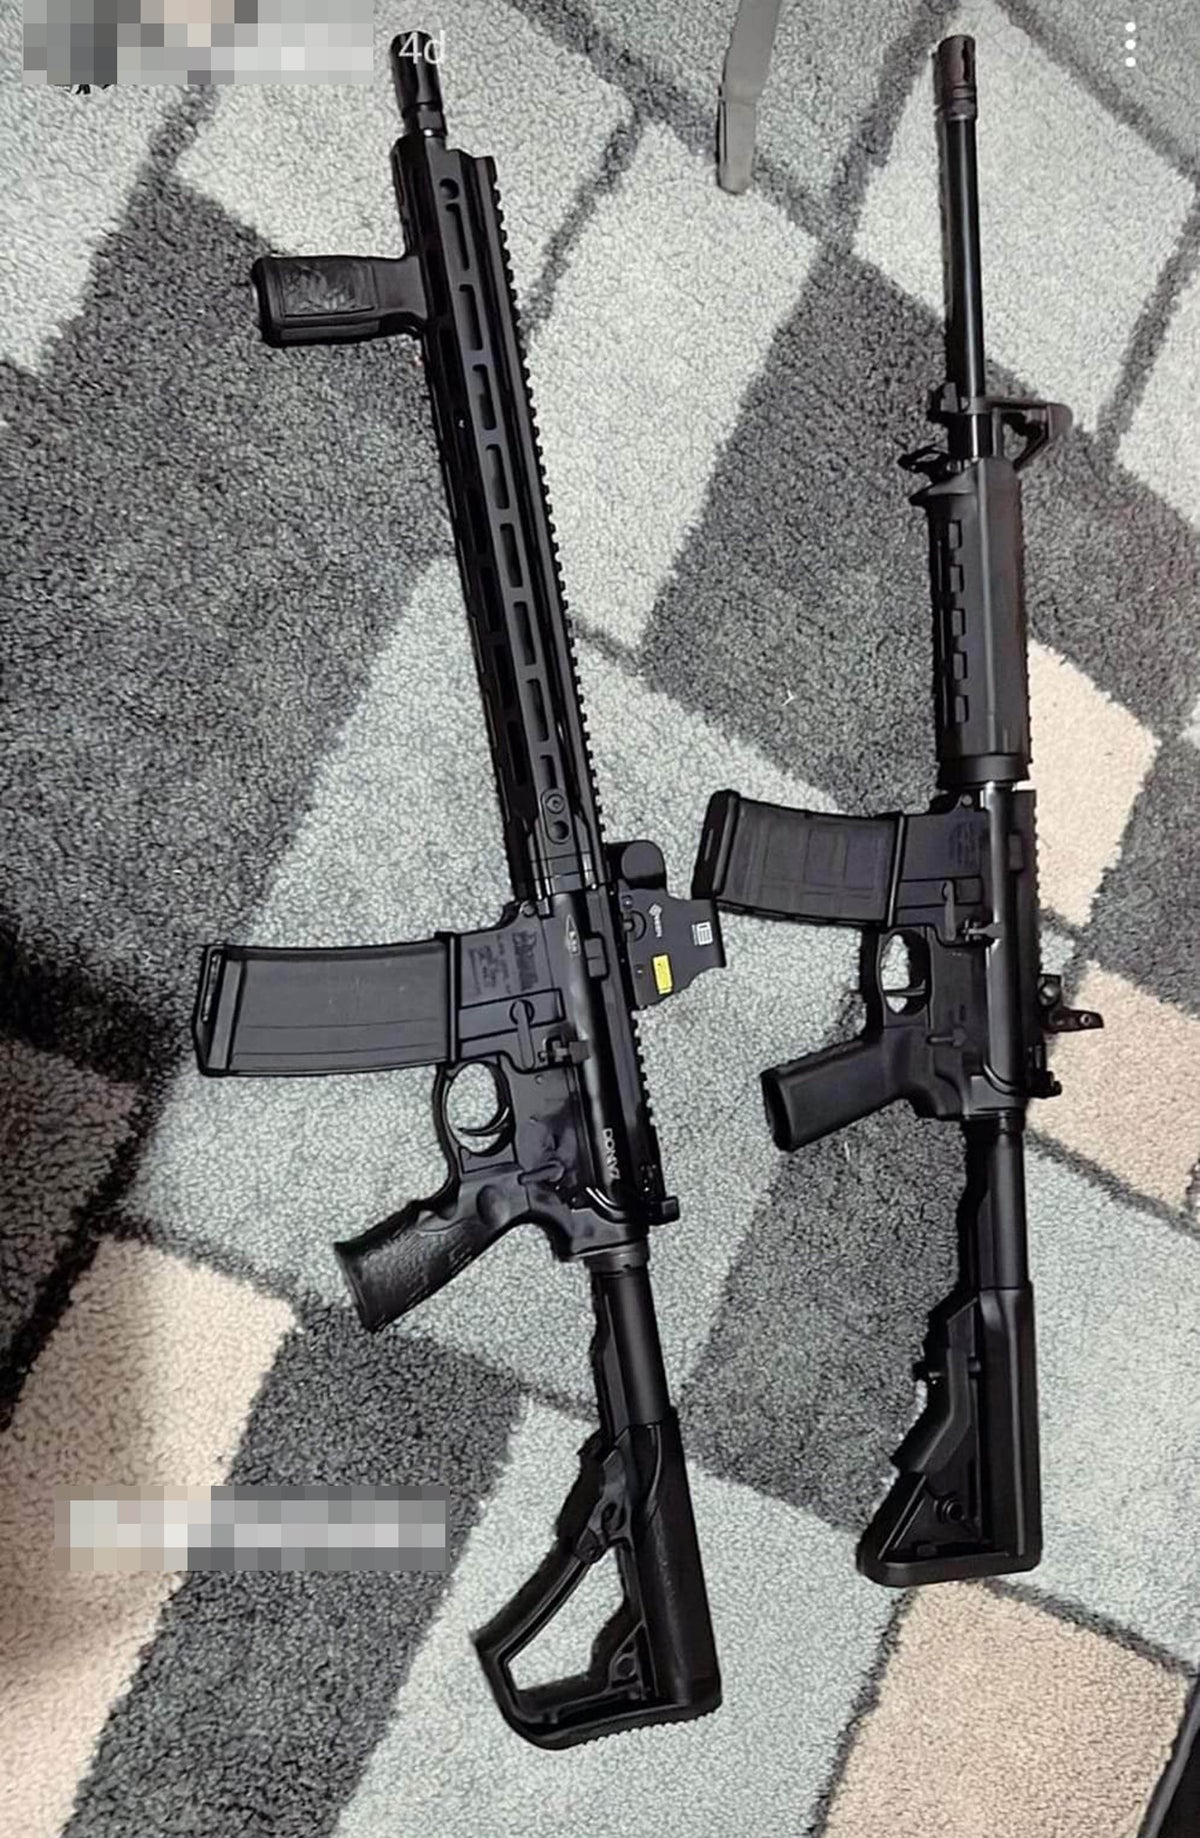 AR-15: Teksas'taki okul çekiminde kullanılan silah nedir?